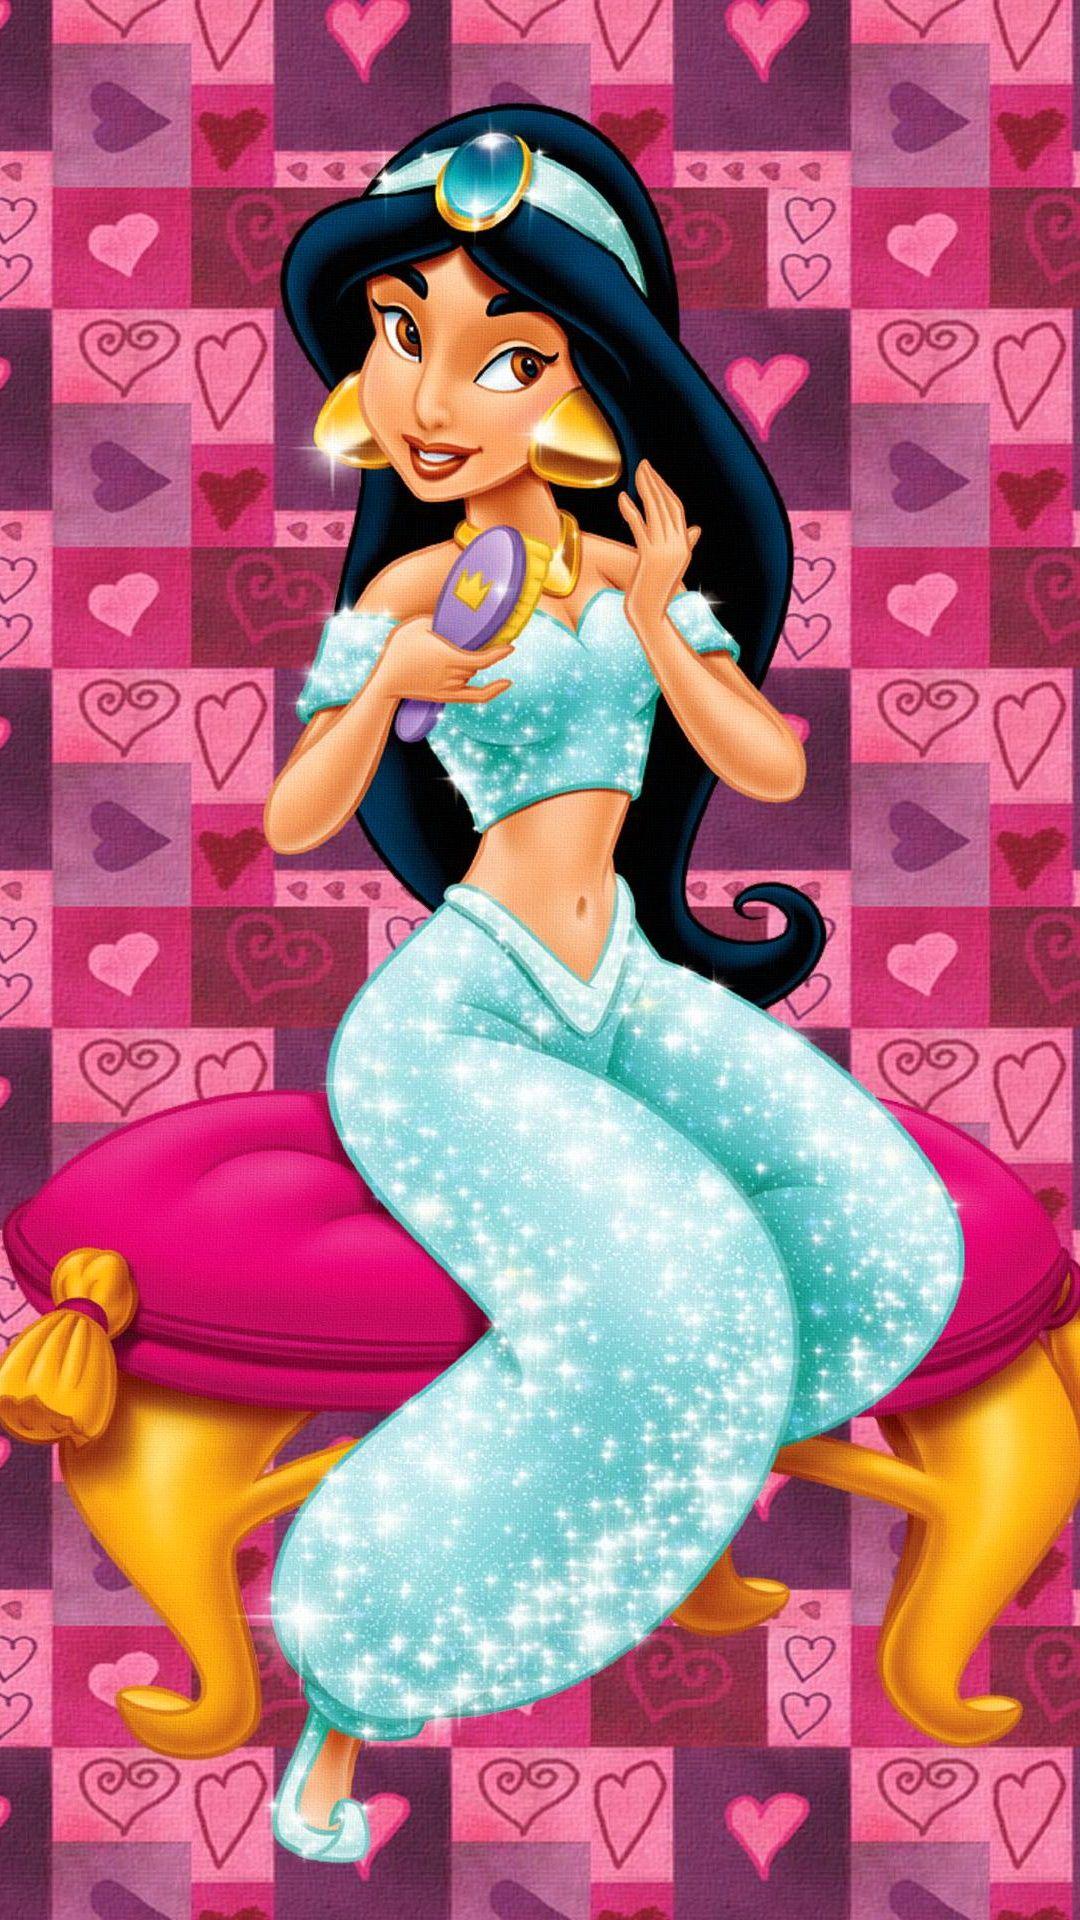 Tap image for more iPhone Disney wallpaper! Princess Jasmine